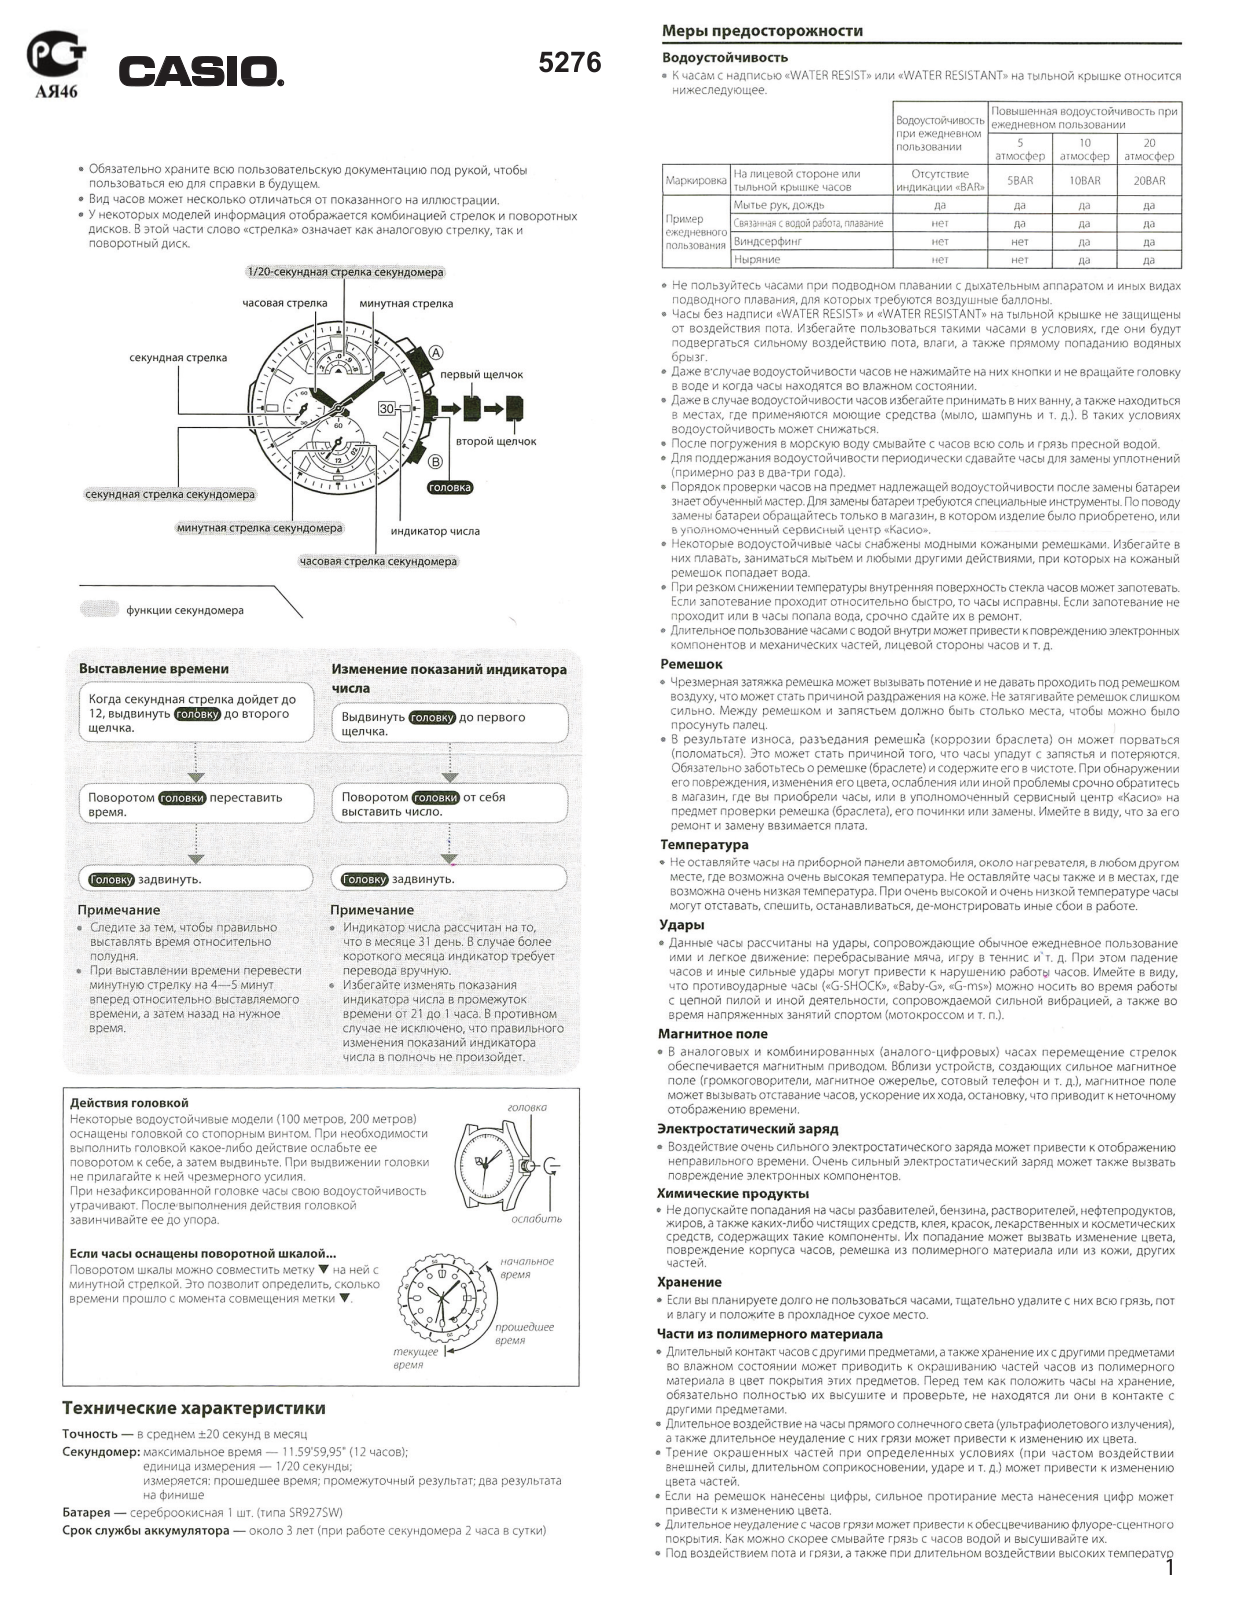 Casio EFR-520L-7A User Manual